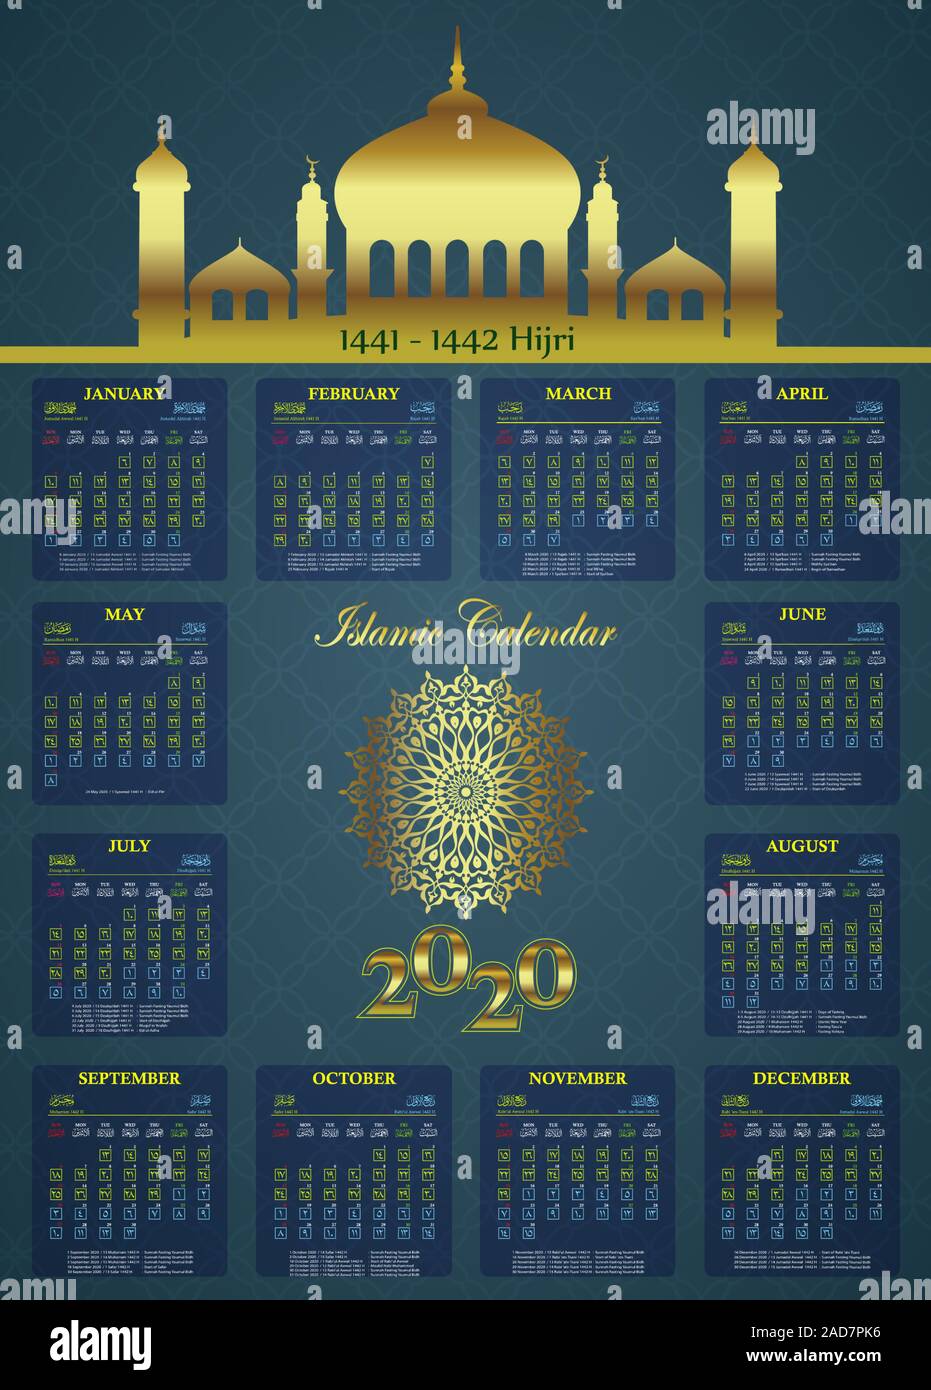 calendario-isl-mico-1442-calendario-mar-2021